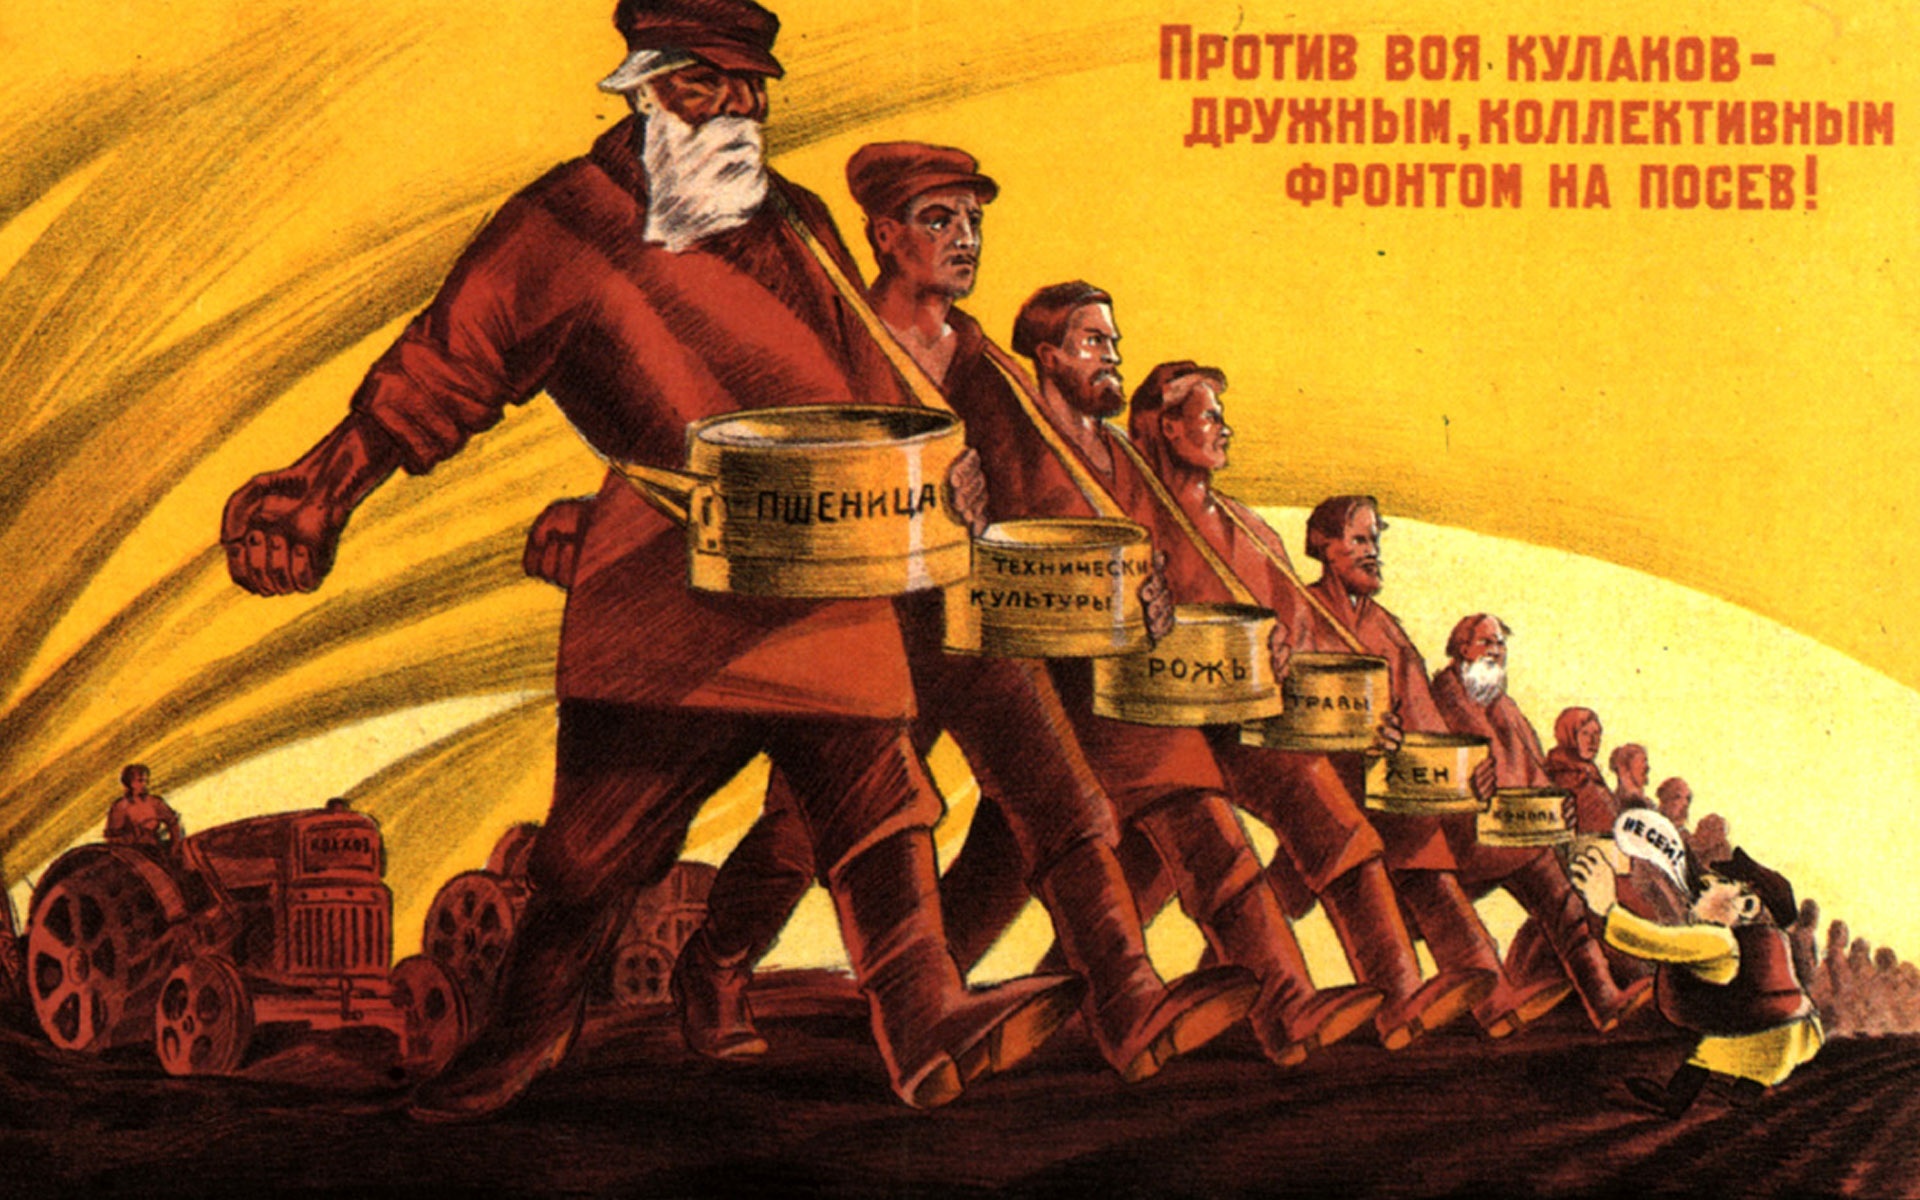 Лозунг 30 годов. Коллективизация в СССР постеры. Коллективизация 1930 плакаты. Плакат кулаки раскулачивание. Пропаганда коллективизации СССР.